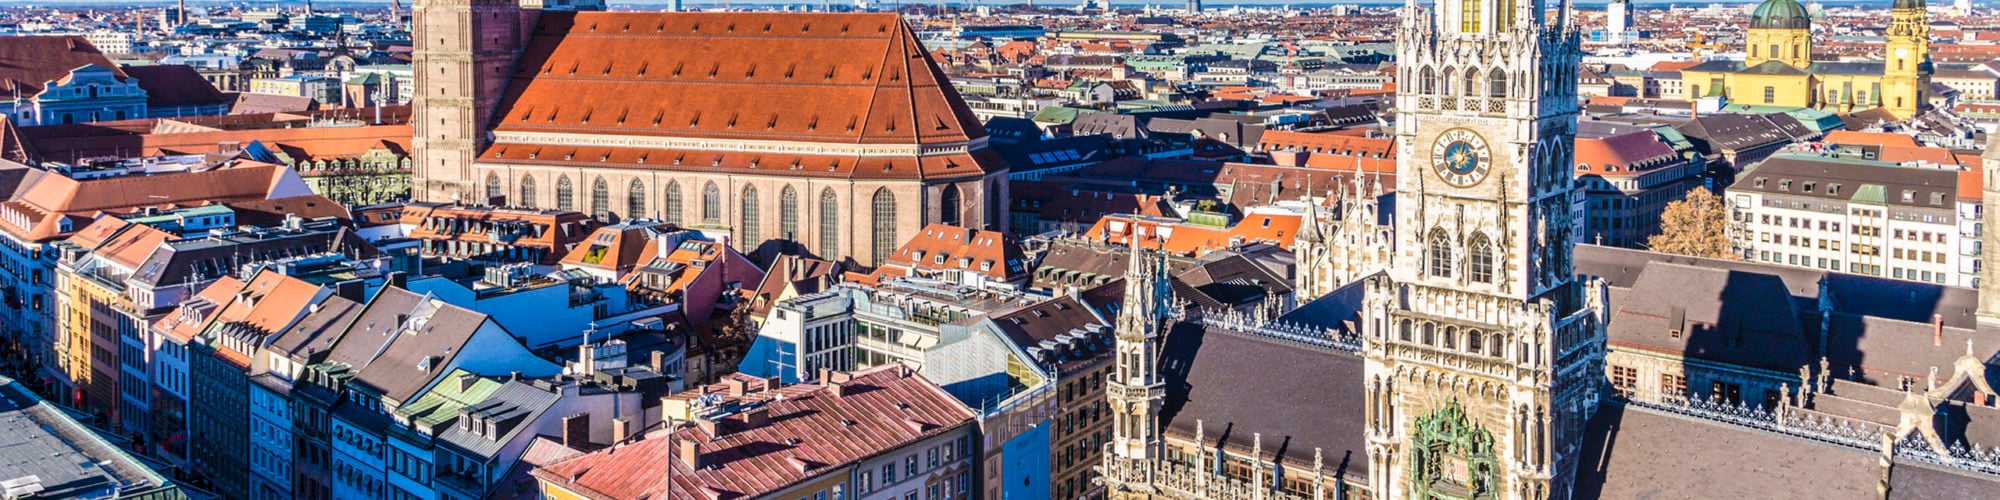 Munich travel agents packages deals